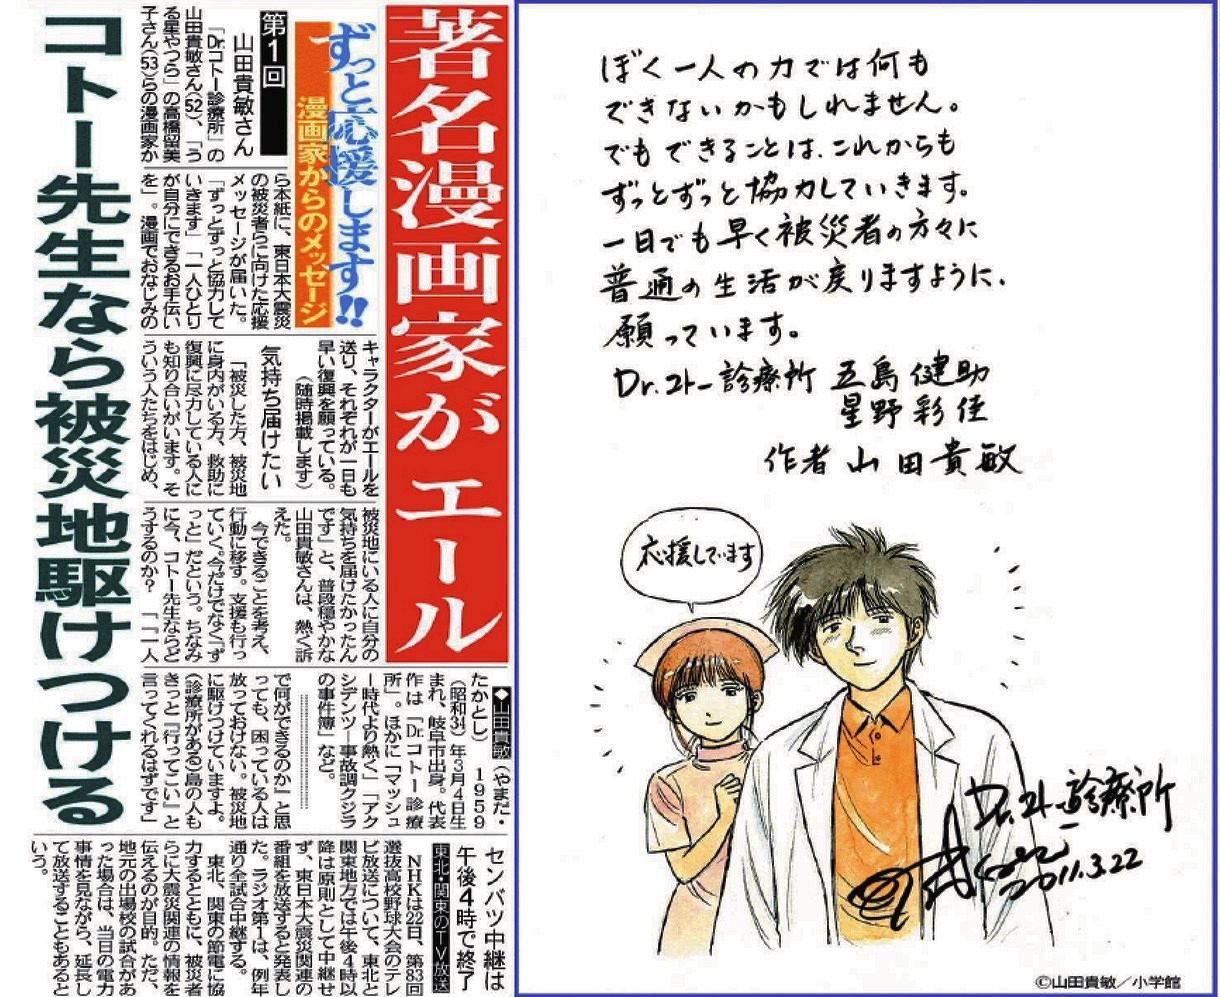 山田さんの漫画が掲載された2011年3月23日付の紙面